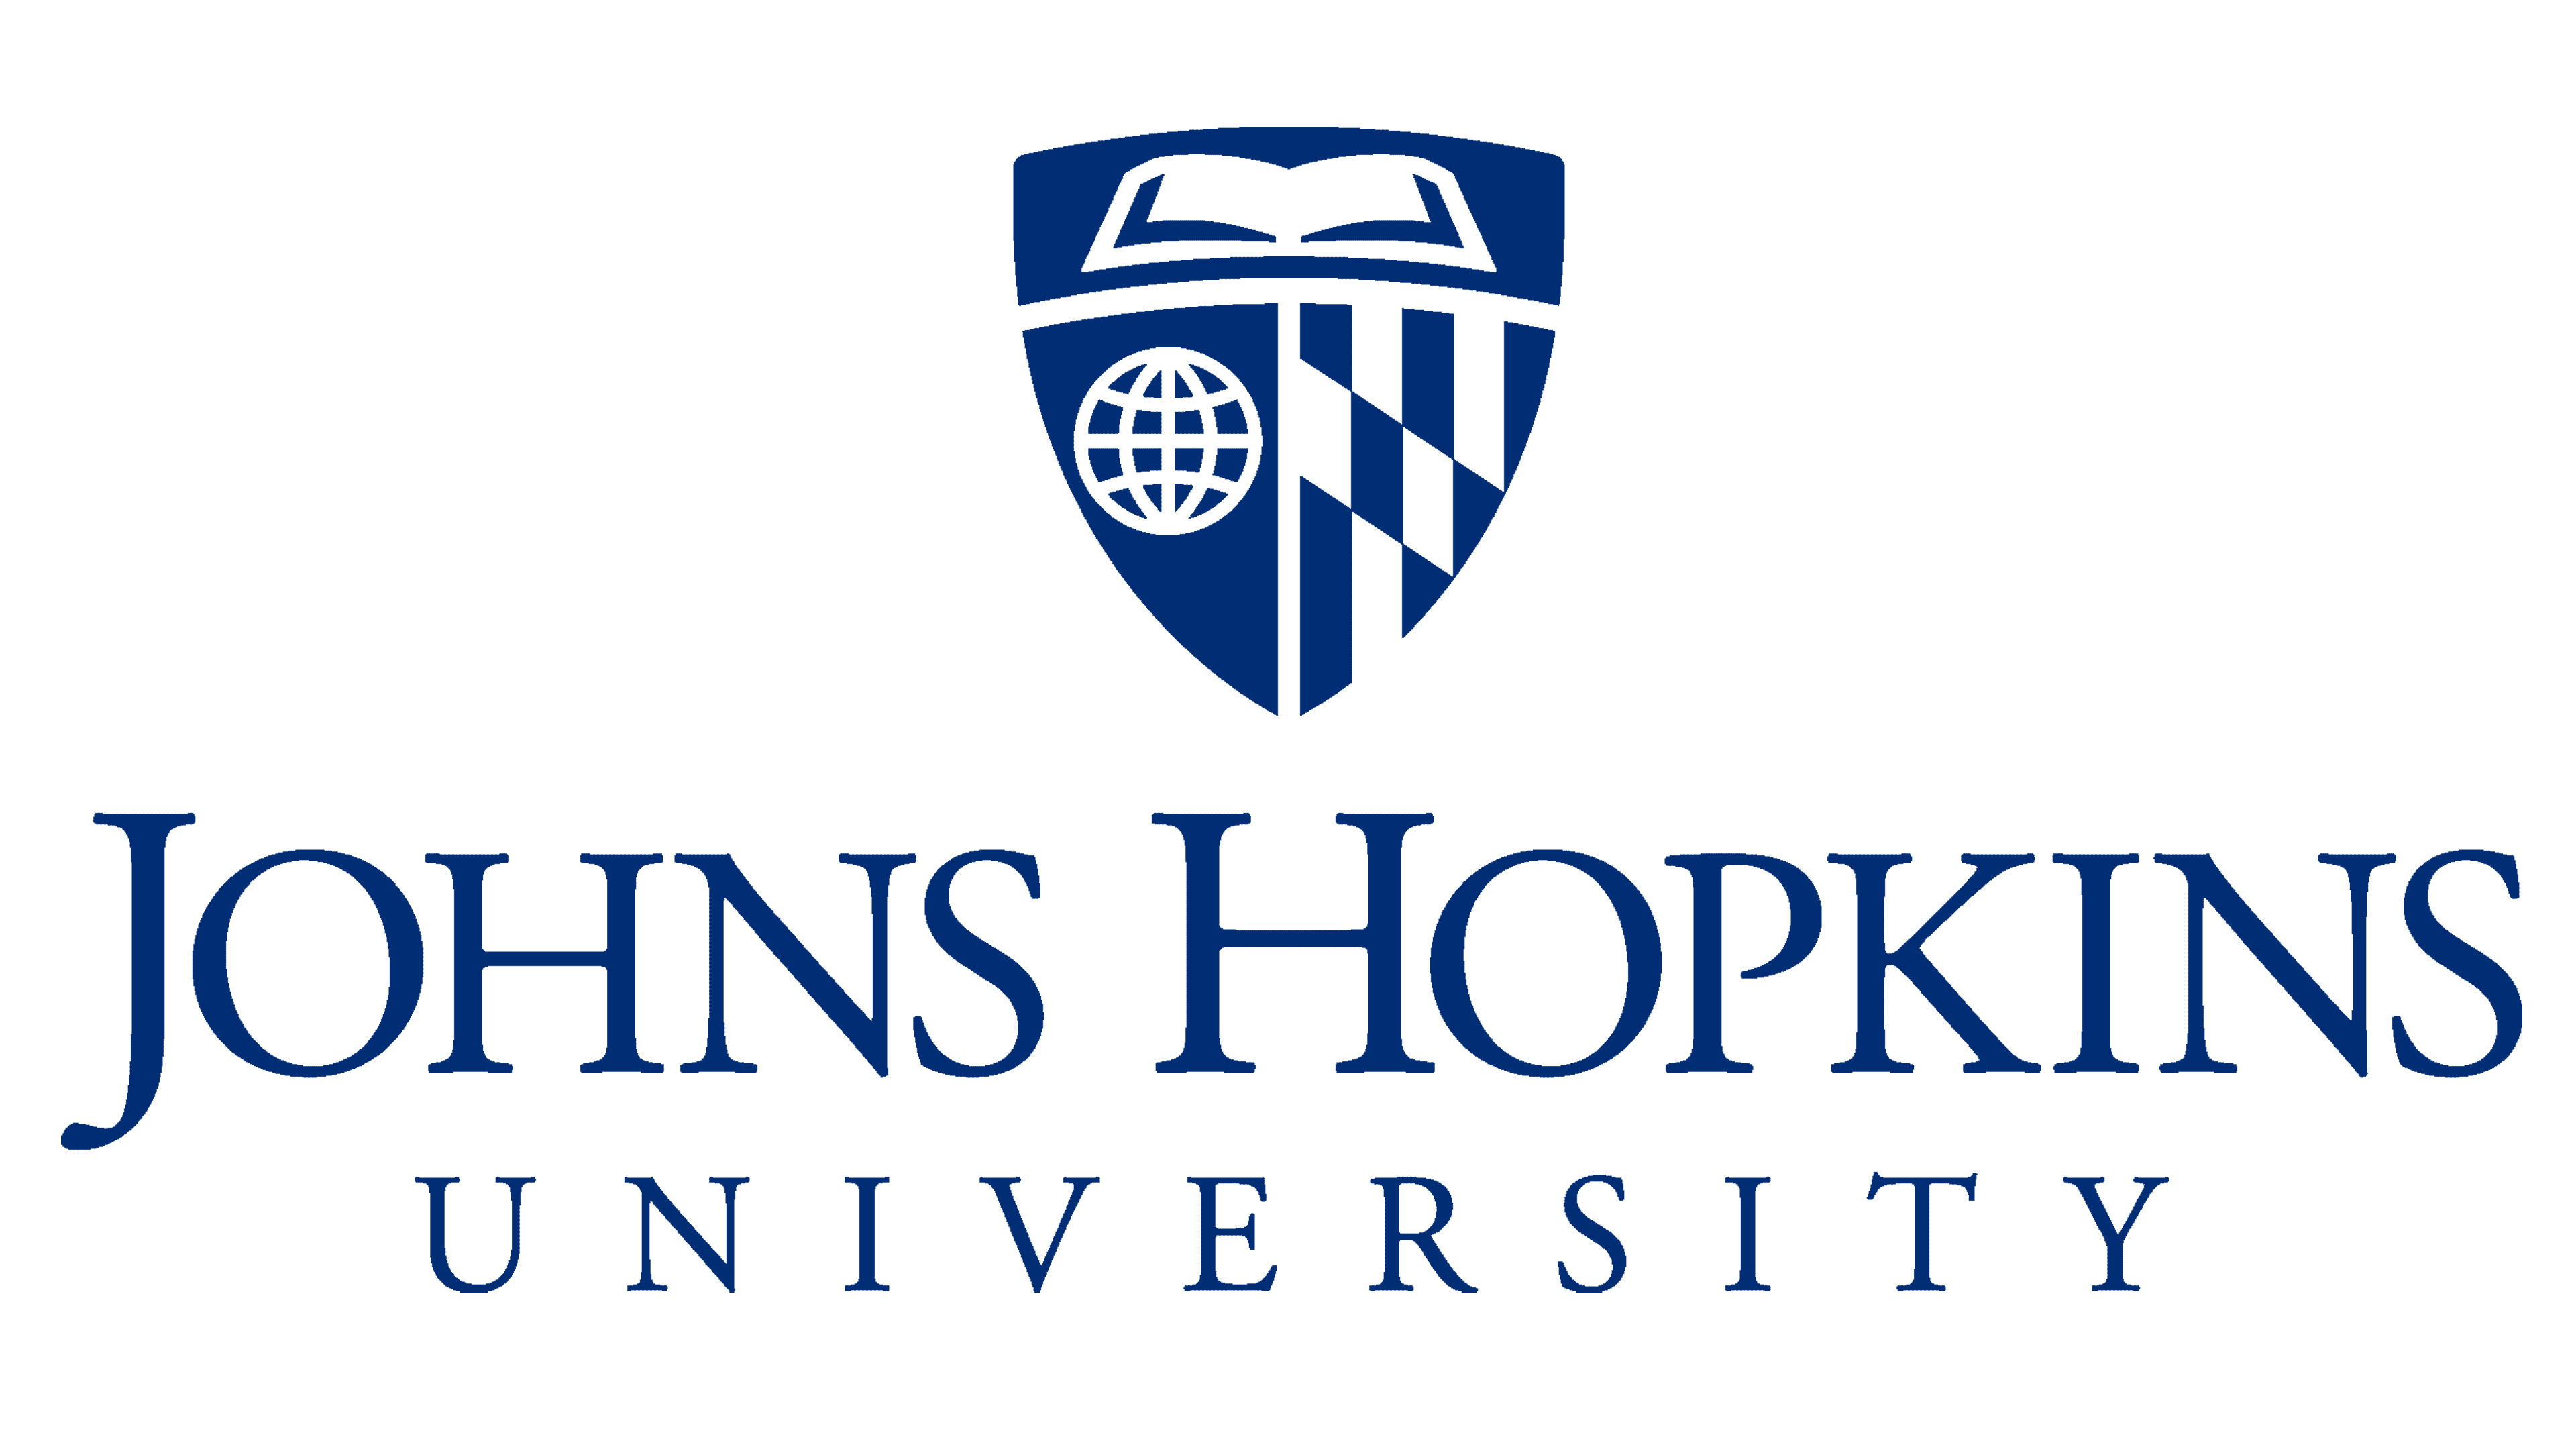 Университет Джона Хопкинса лого. Университет Джона Хопкинса медицинский Факультет. MBA логотип. Логотип университета.